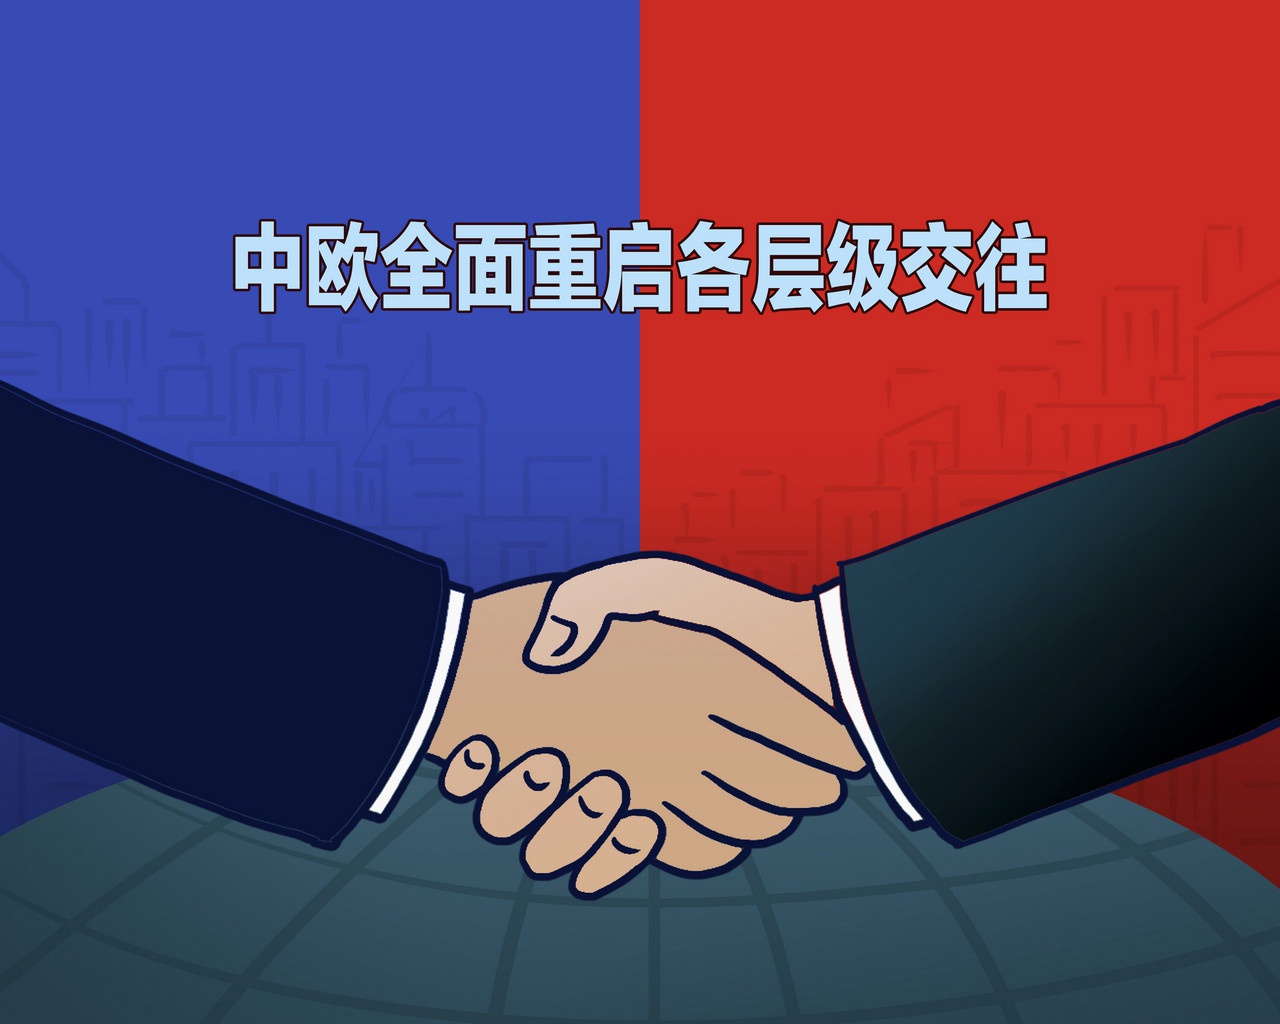 Китай и Европа возобновляют обмены на всех уровнях. Китайский плакат.